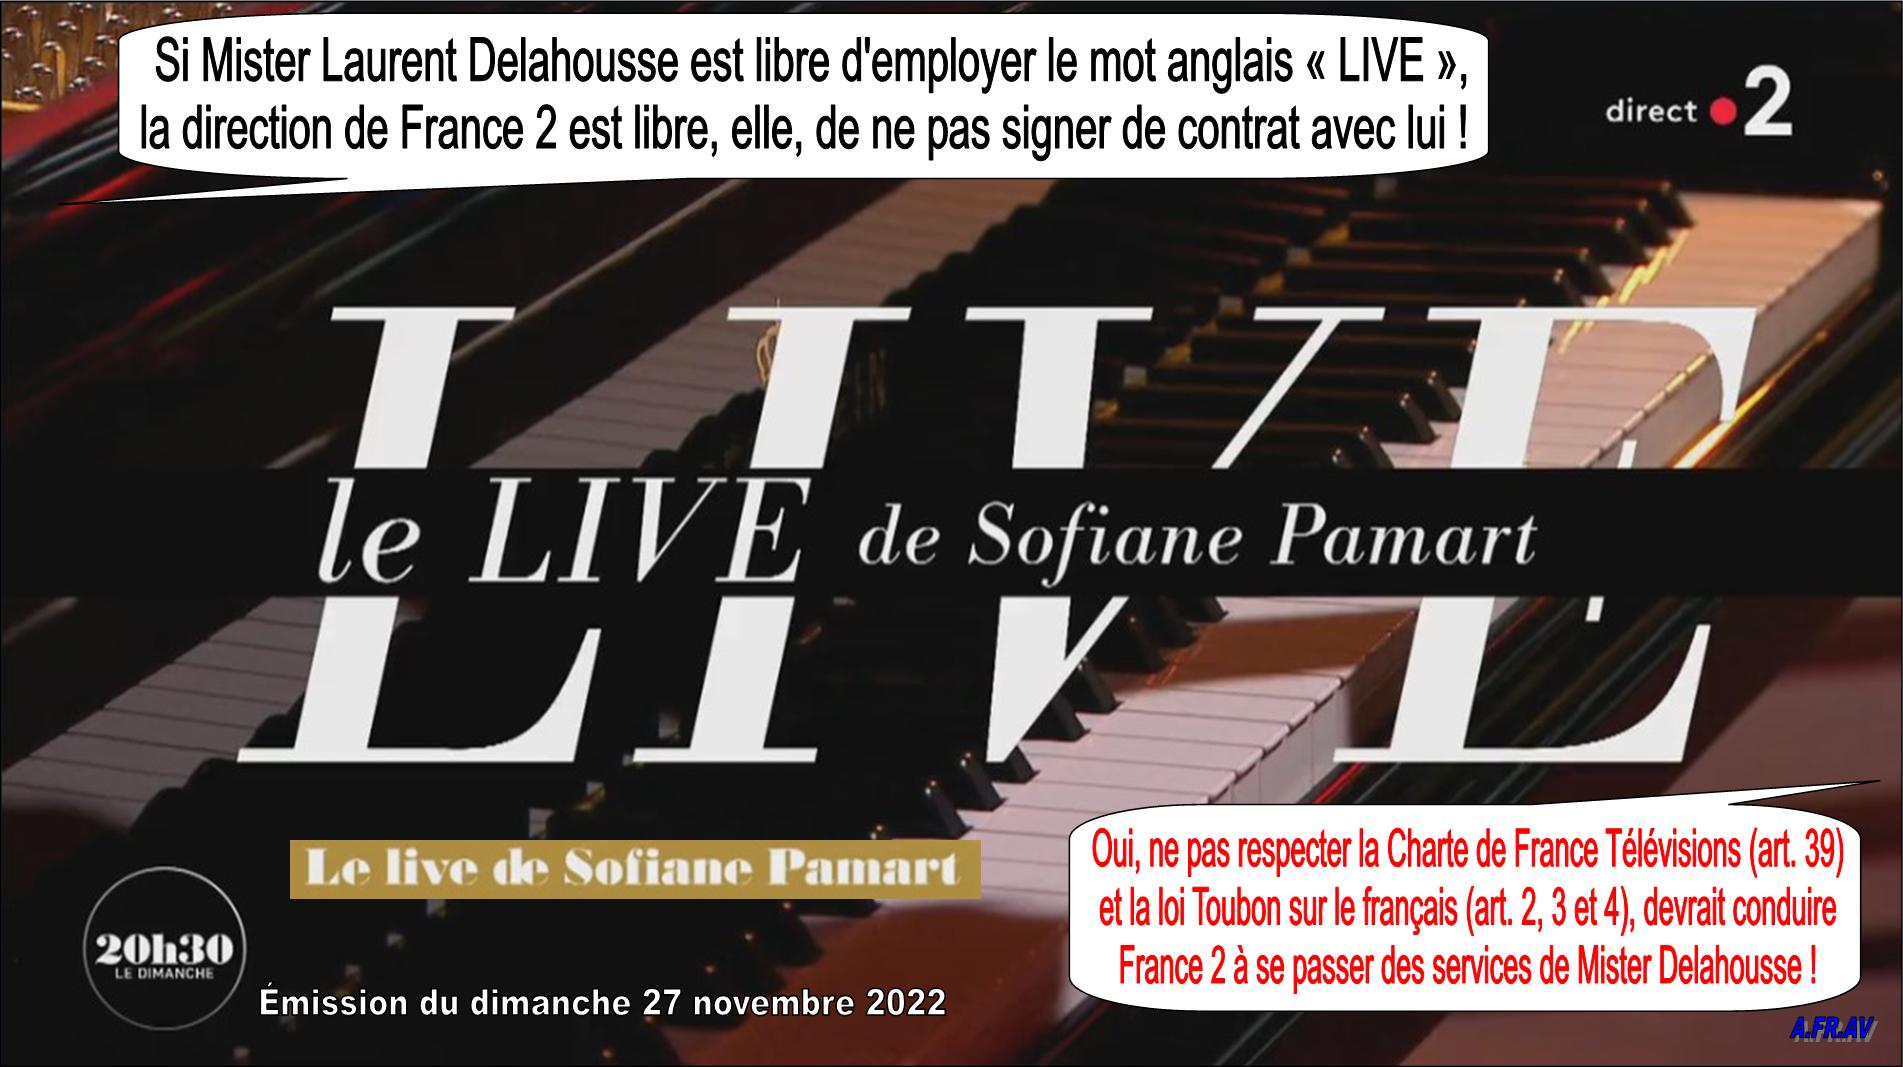 France 2 et France Télévisions ne doivent pas travailler avec Laurent Delahousse, l'anglomane